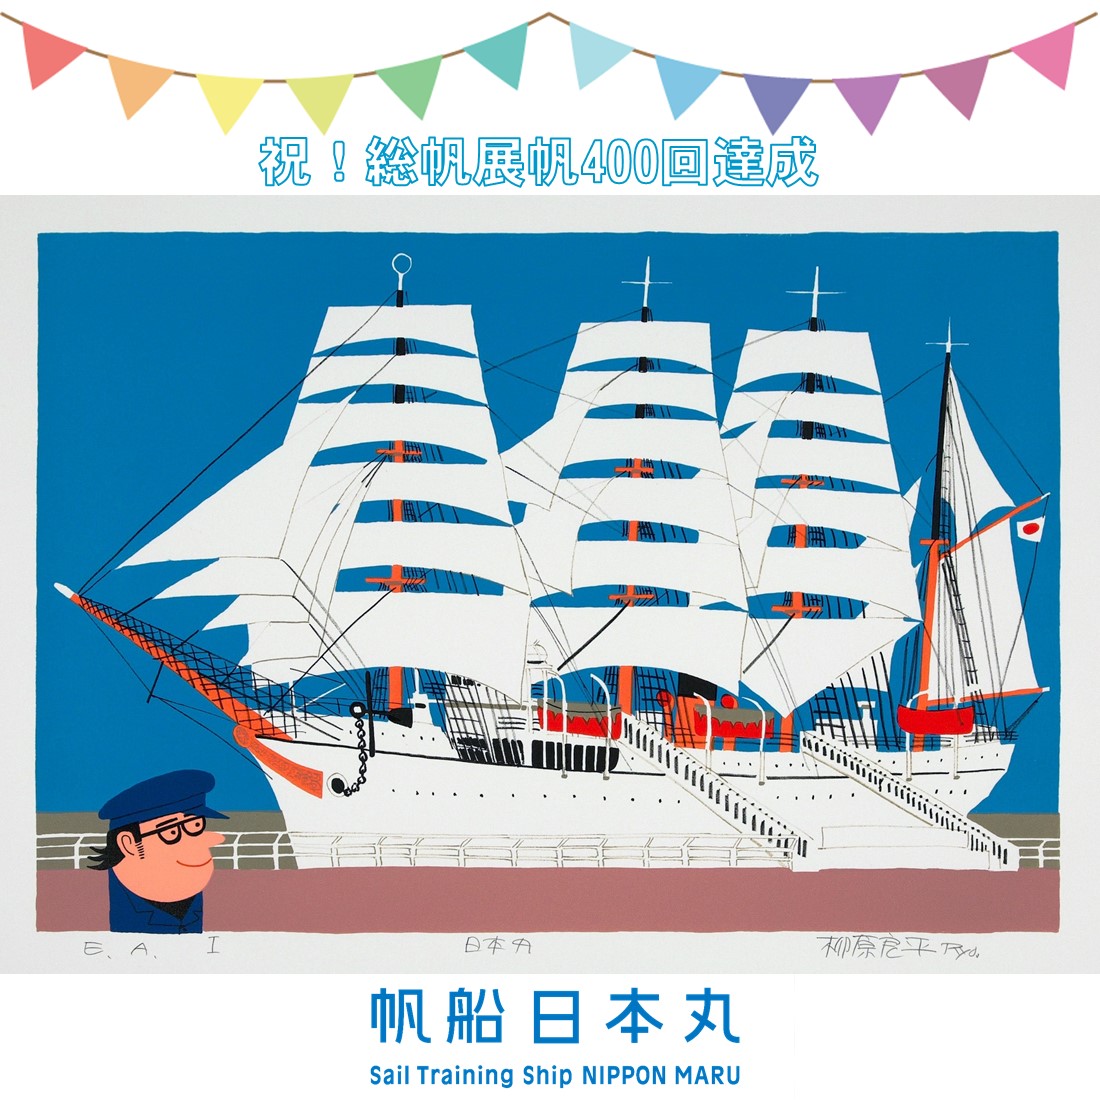 10/9 帆船日本丸「総帆展帆」400回記念式典を実施します - 帆船日本丸